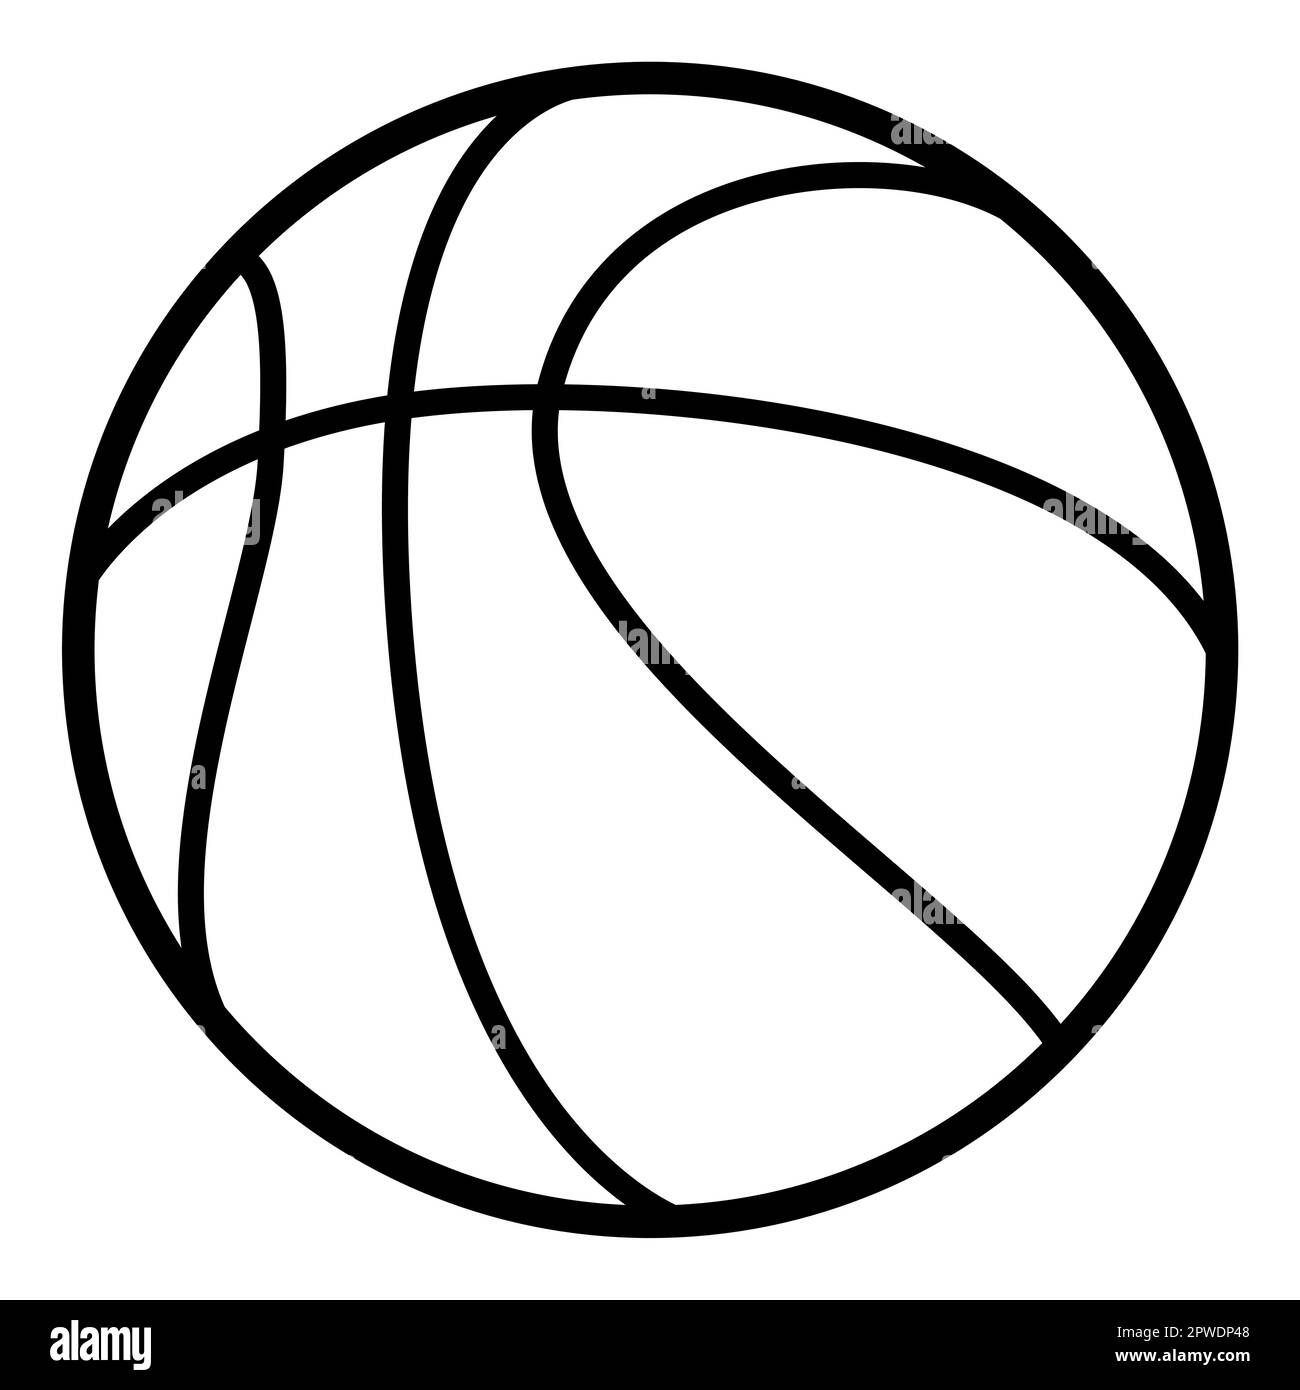 Balle de basket Banque d'images noir et blanc - Alamy